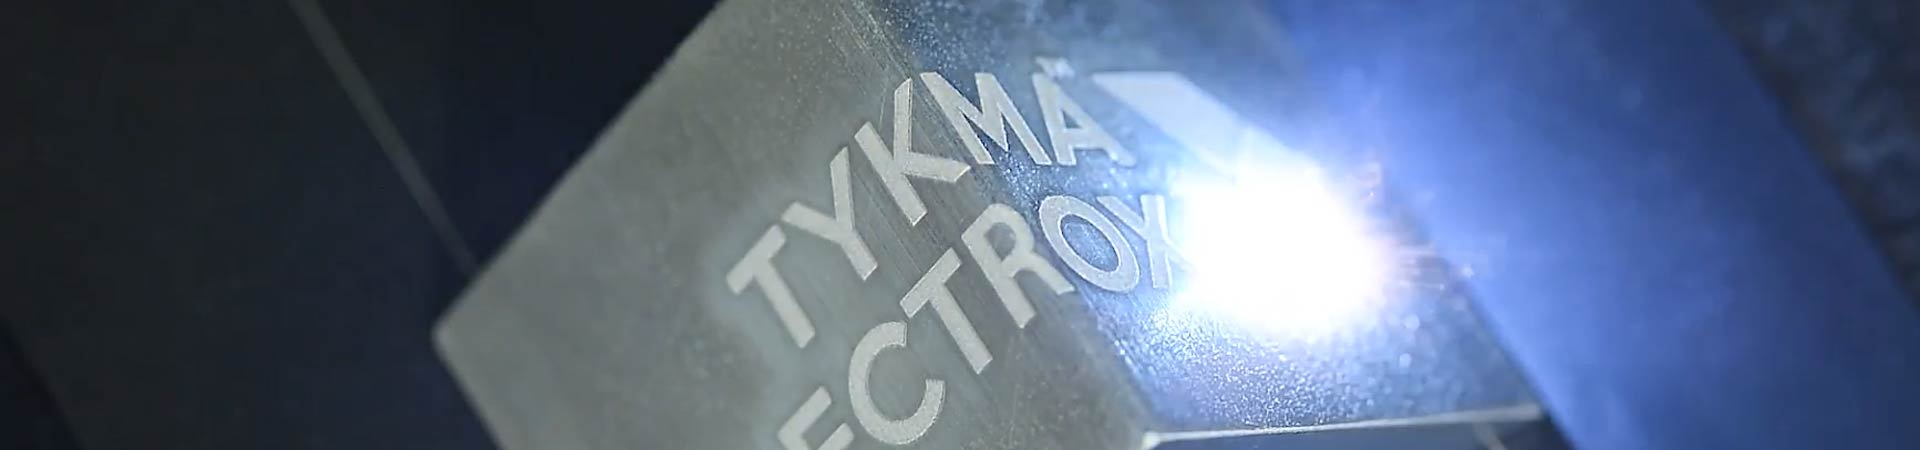 TYKMA Electrox 3D laser marking on metal